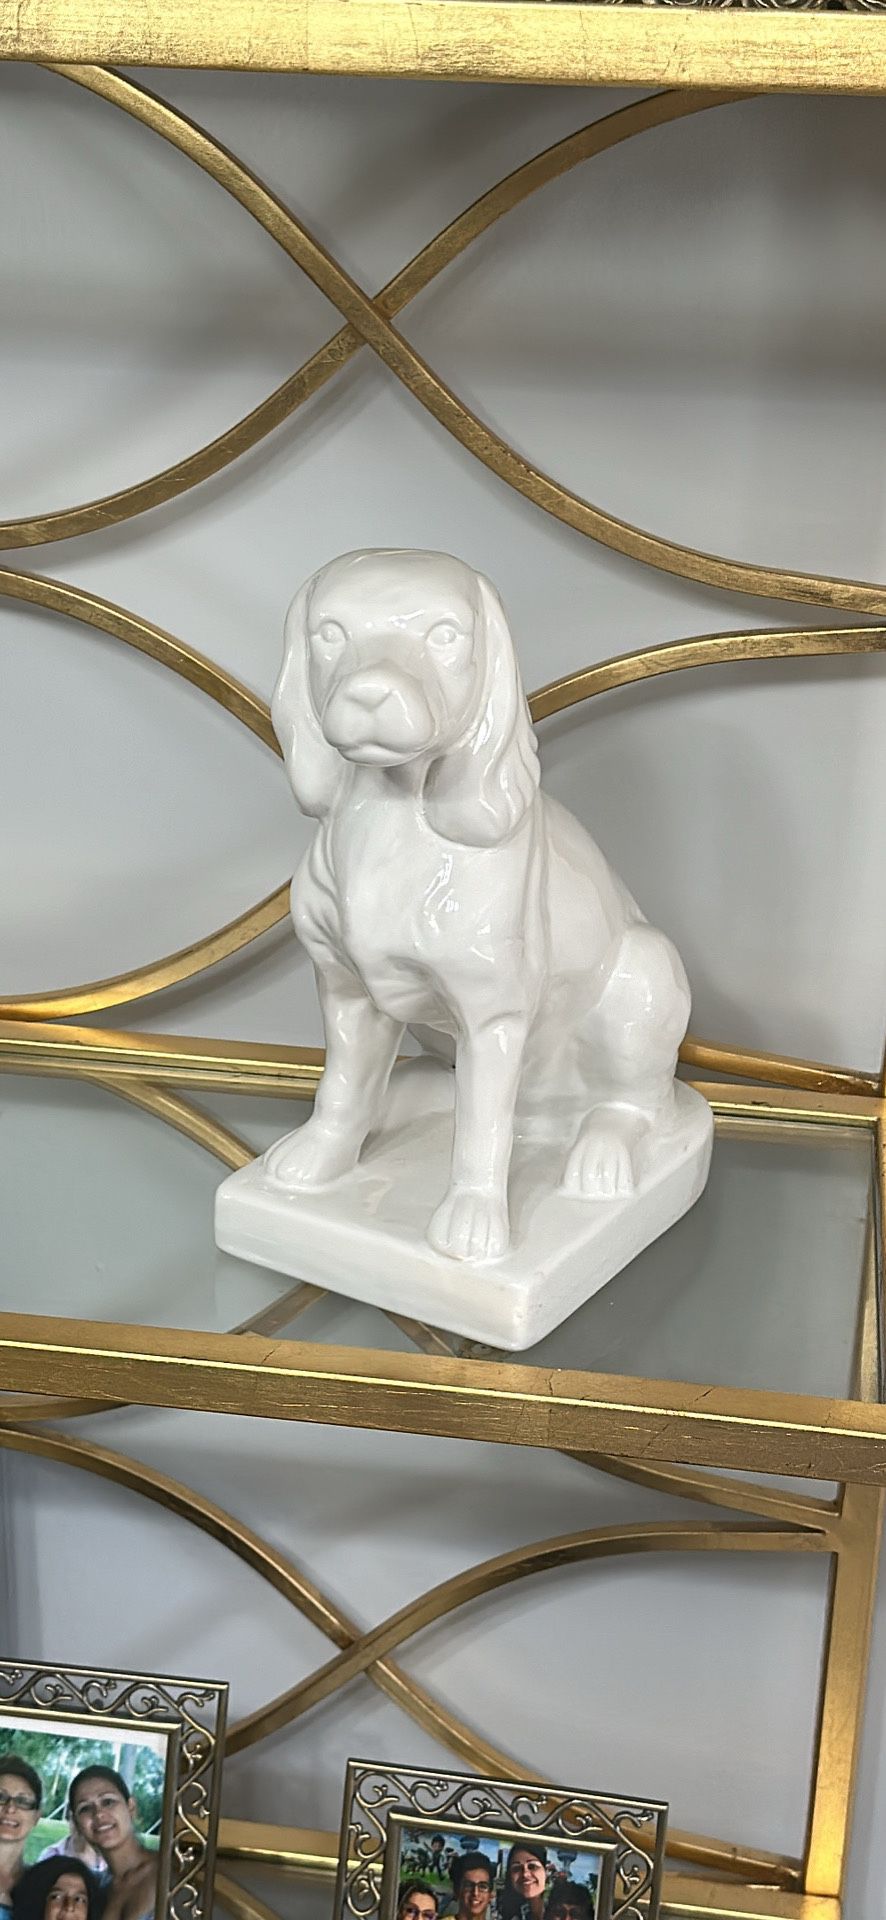 white ceramic deco Resin Sculpture home figurine dog. H11in W5in D 8.5in